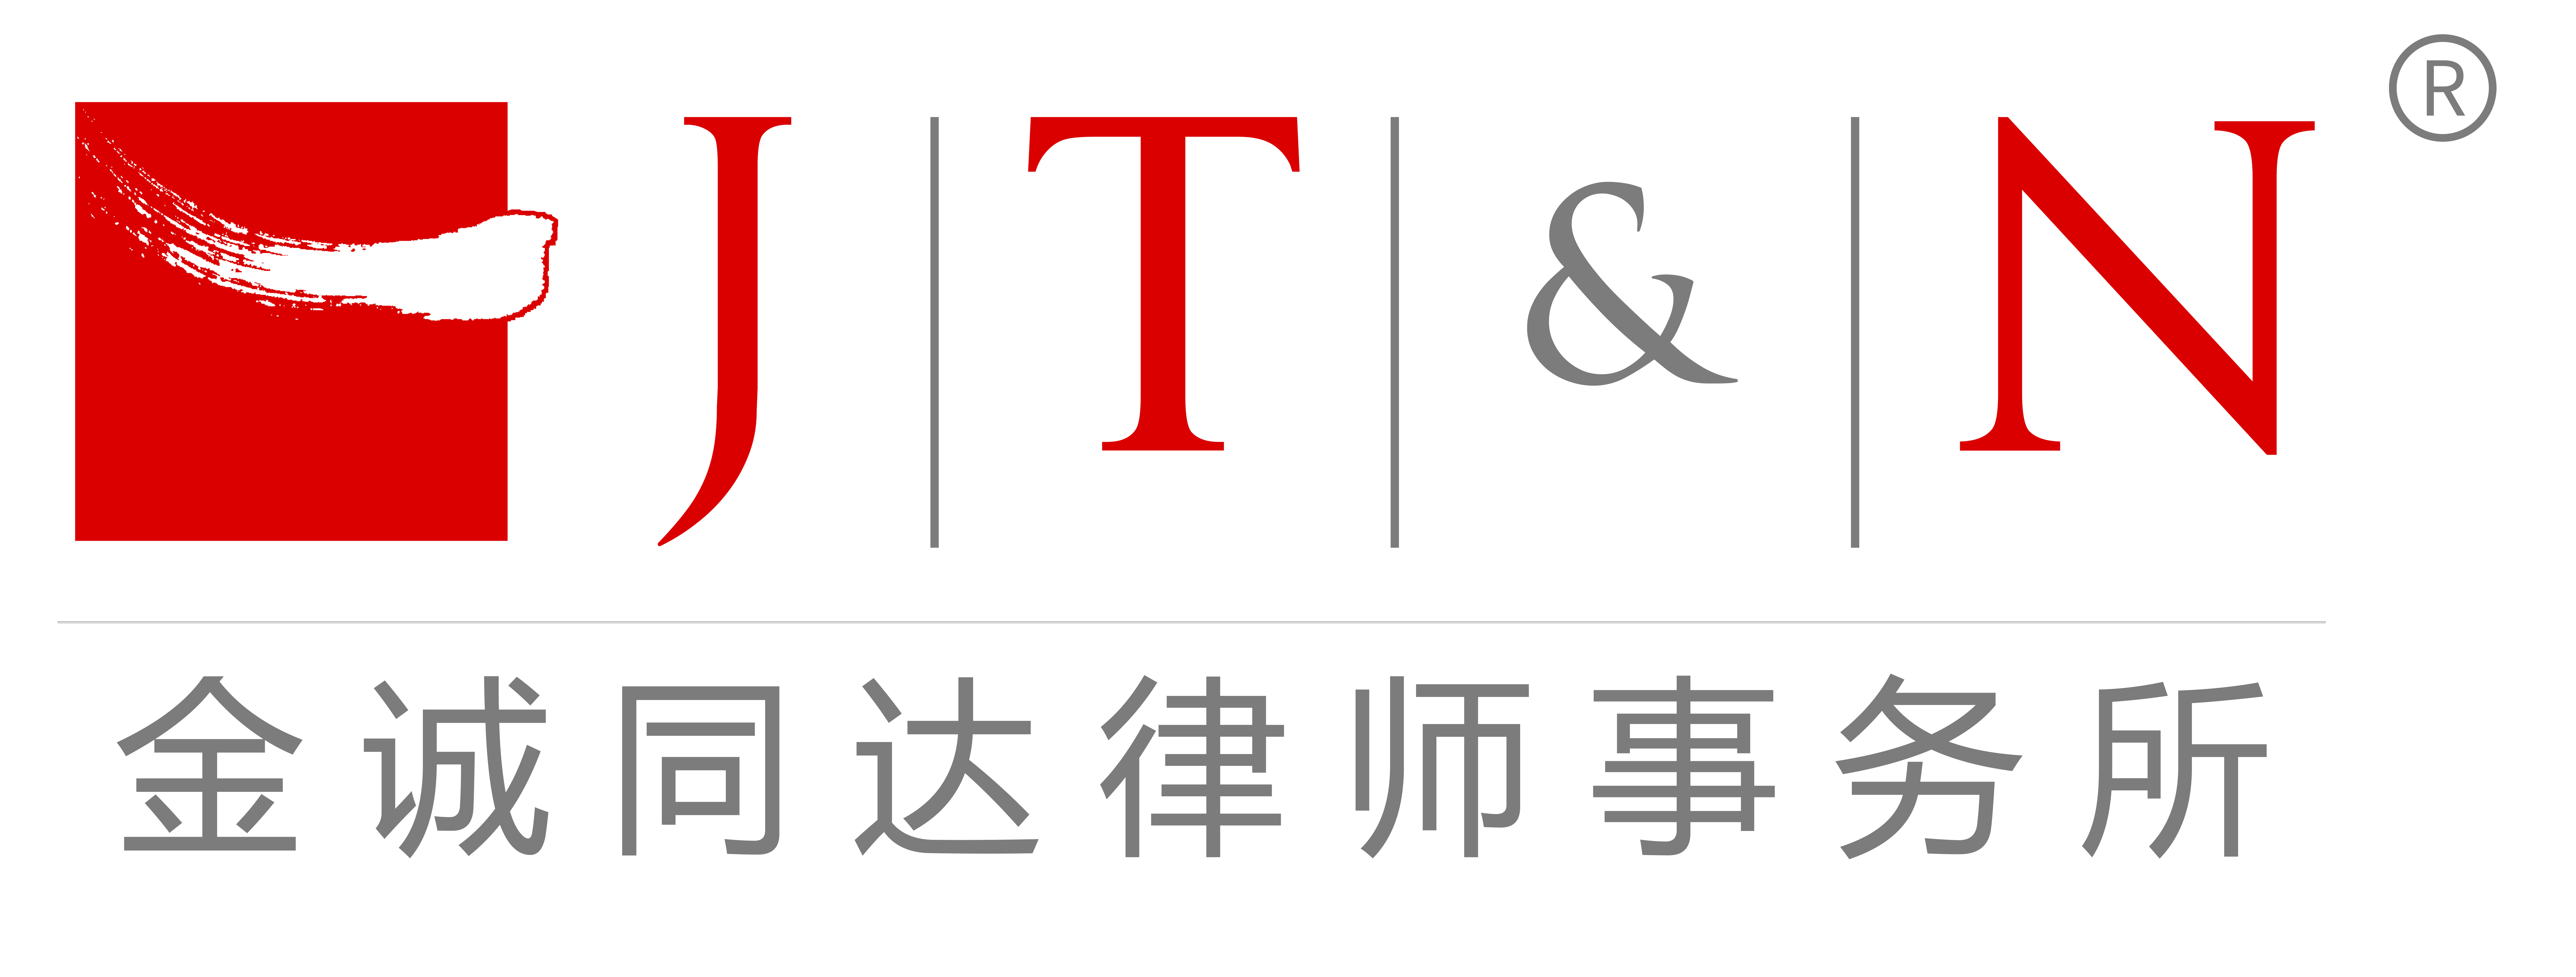 Jincheng Tongda & Neal Law Firm